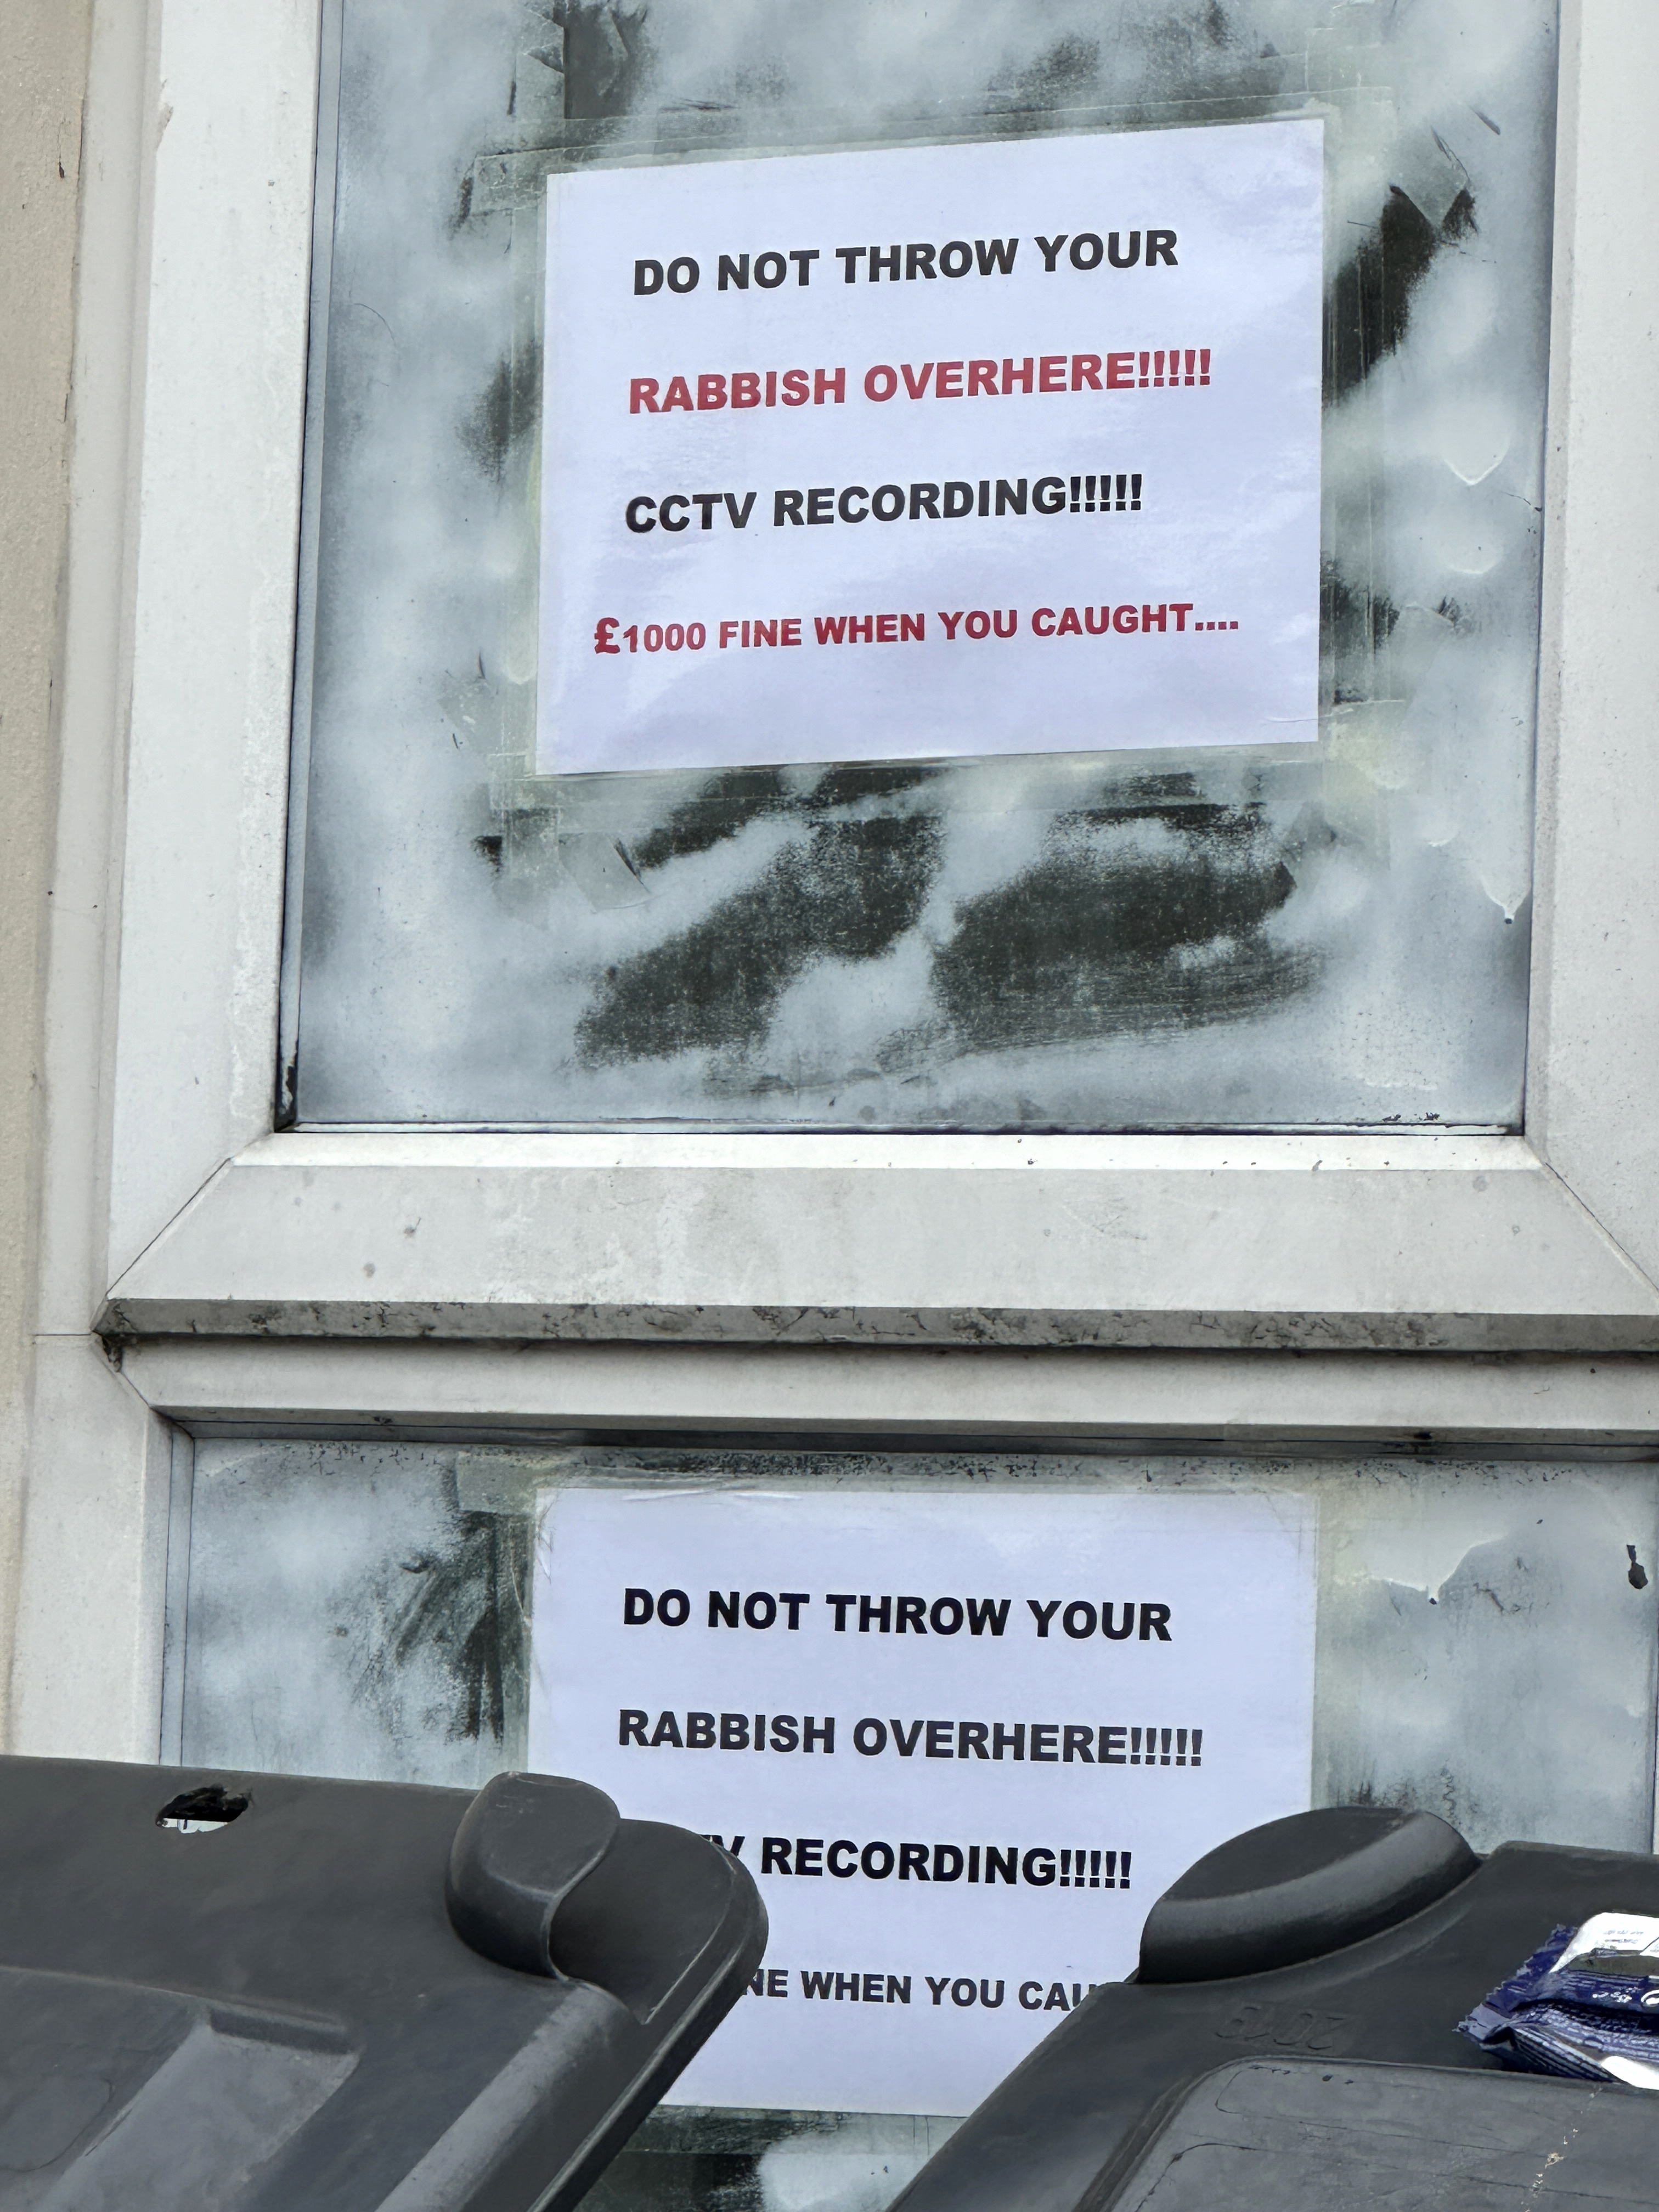 Ein Schild warnt vor einer Geldstrafe von 1.000 Pfund für das Wegwerfen von Müll